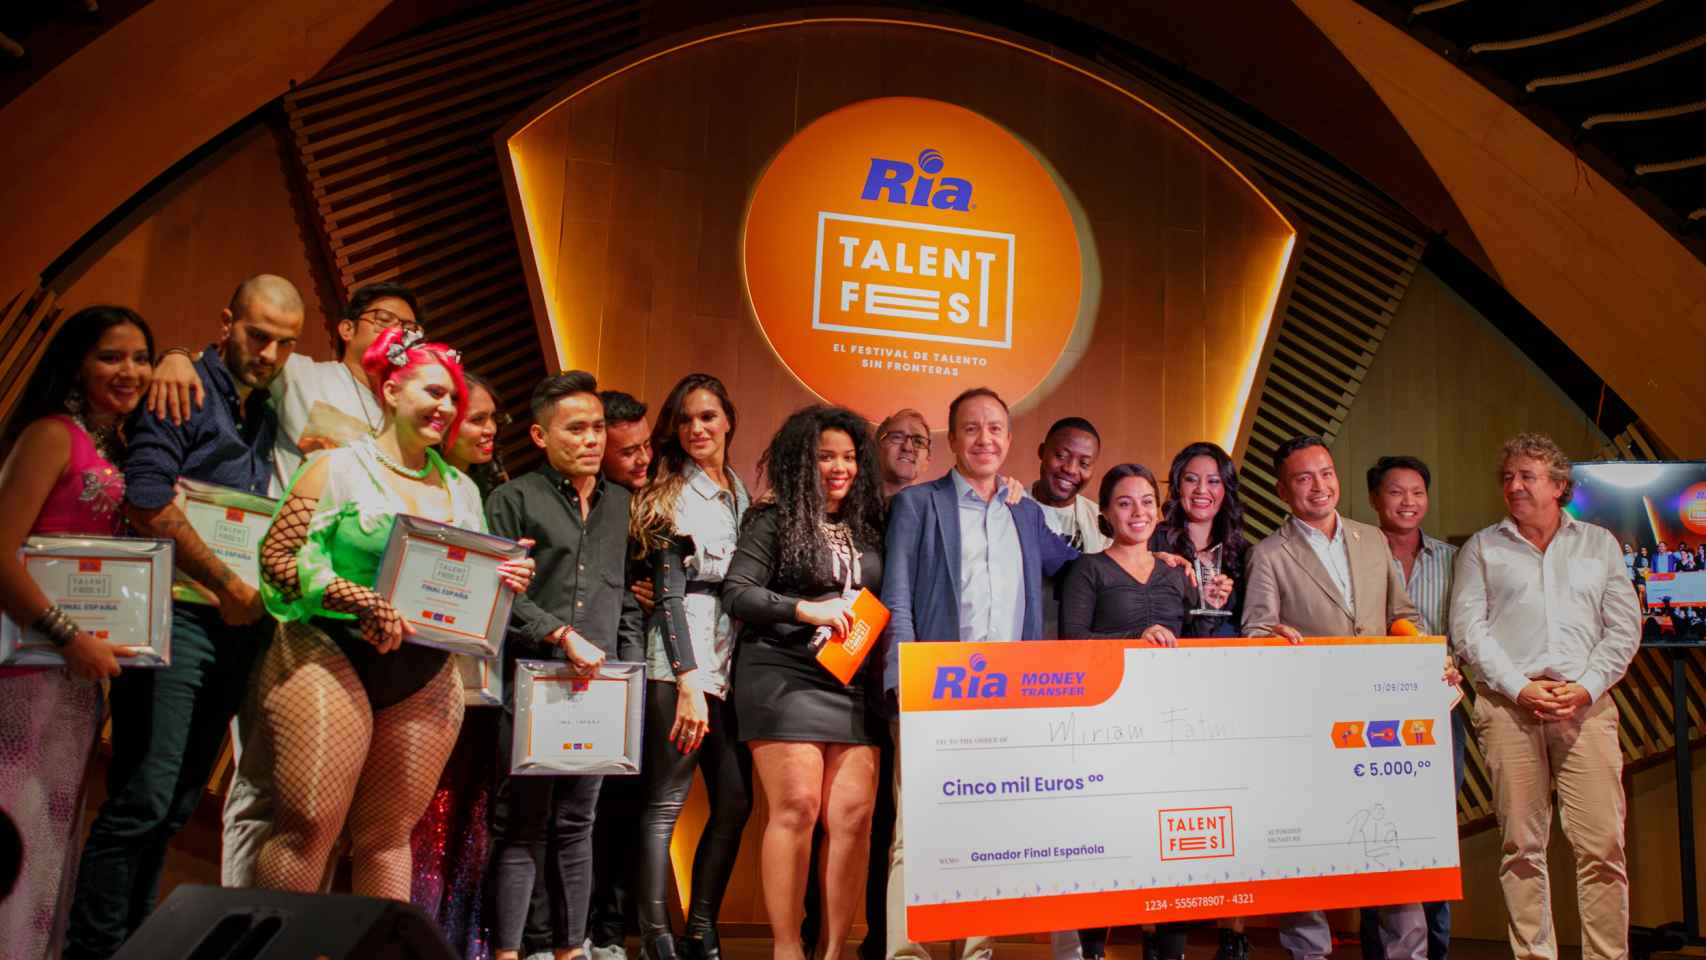 Miriam Fatmi posa con su cheque tras la victoria del Talent Fest de Ria.